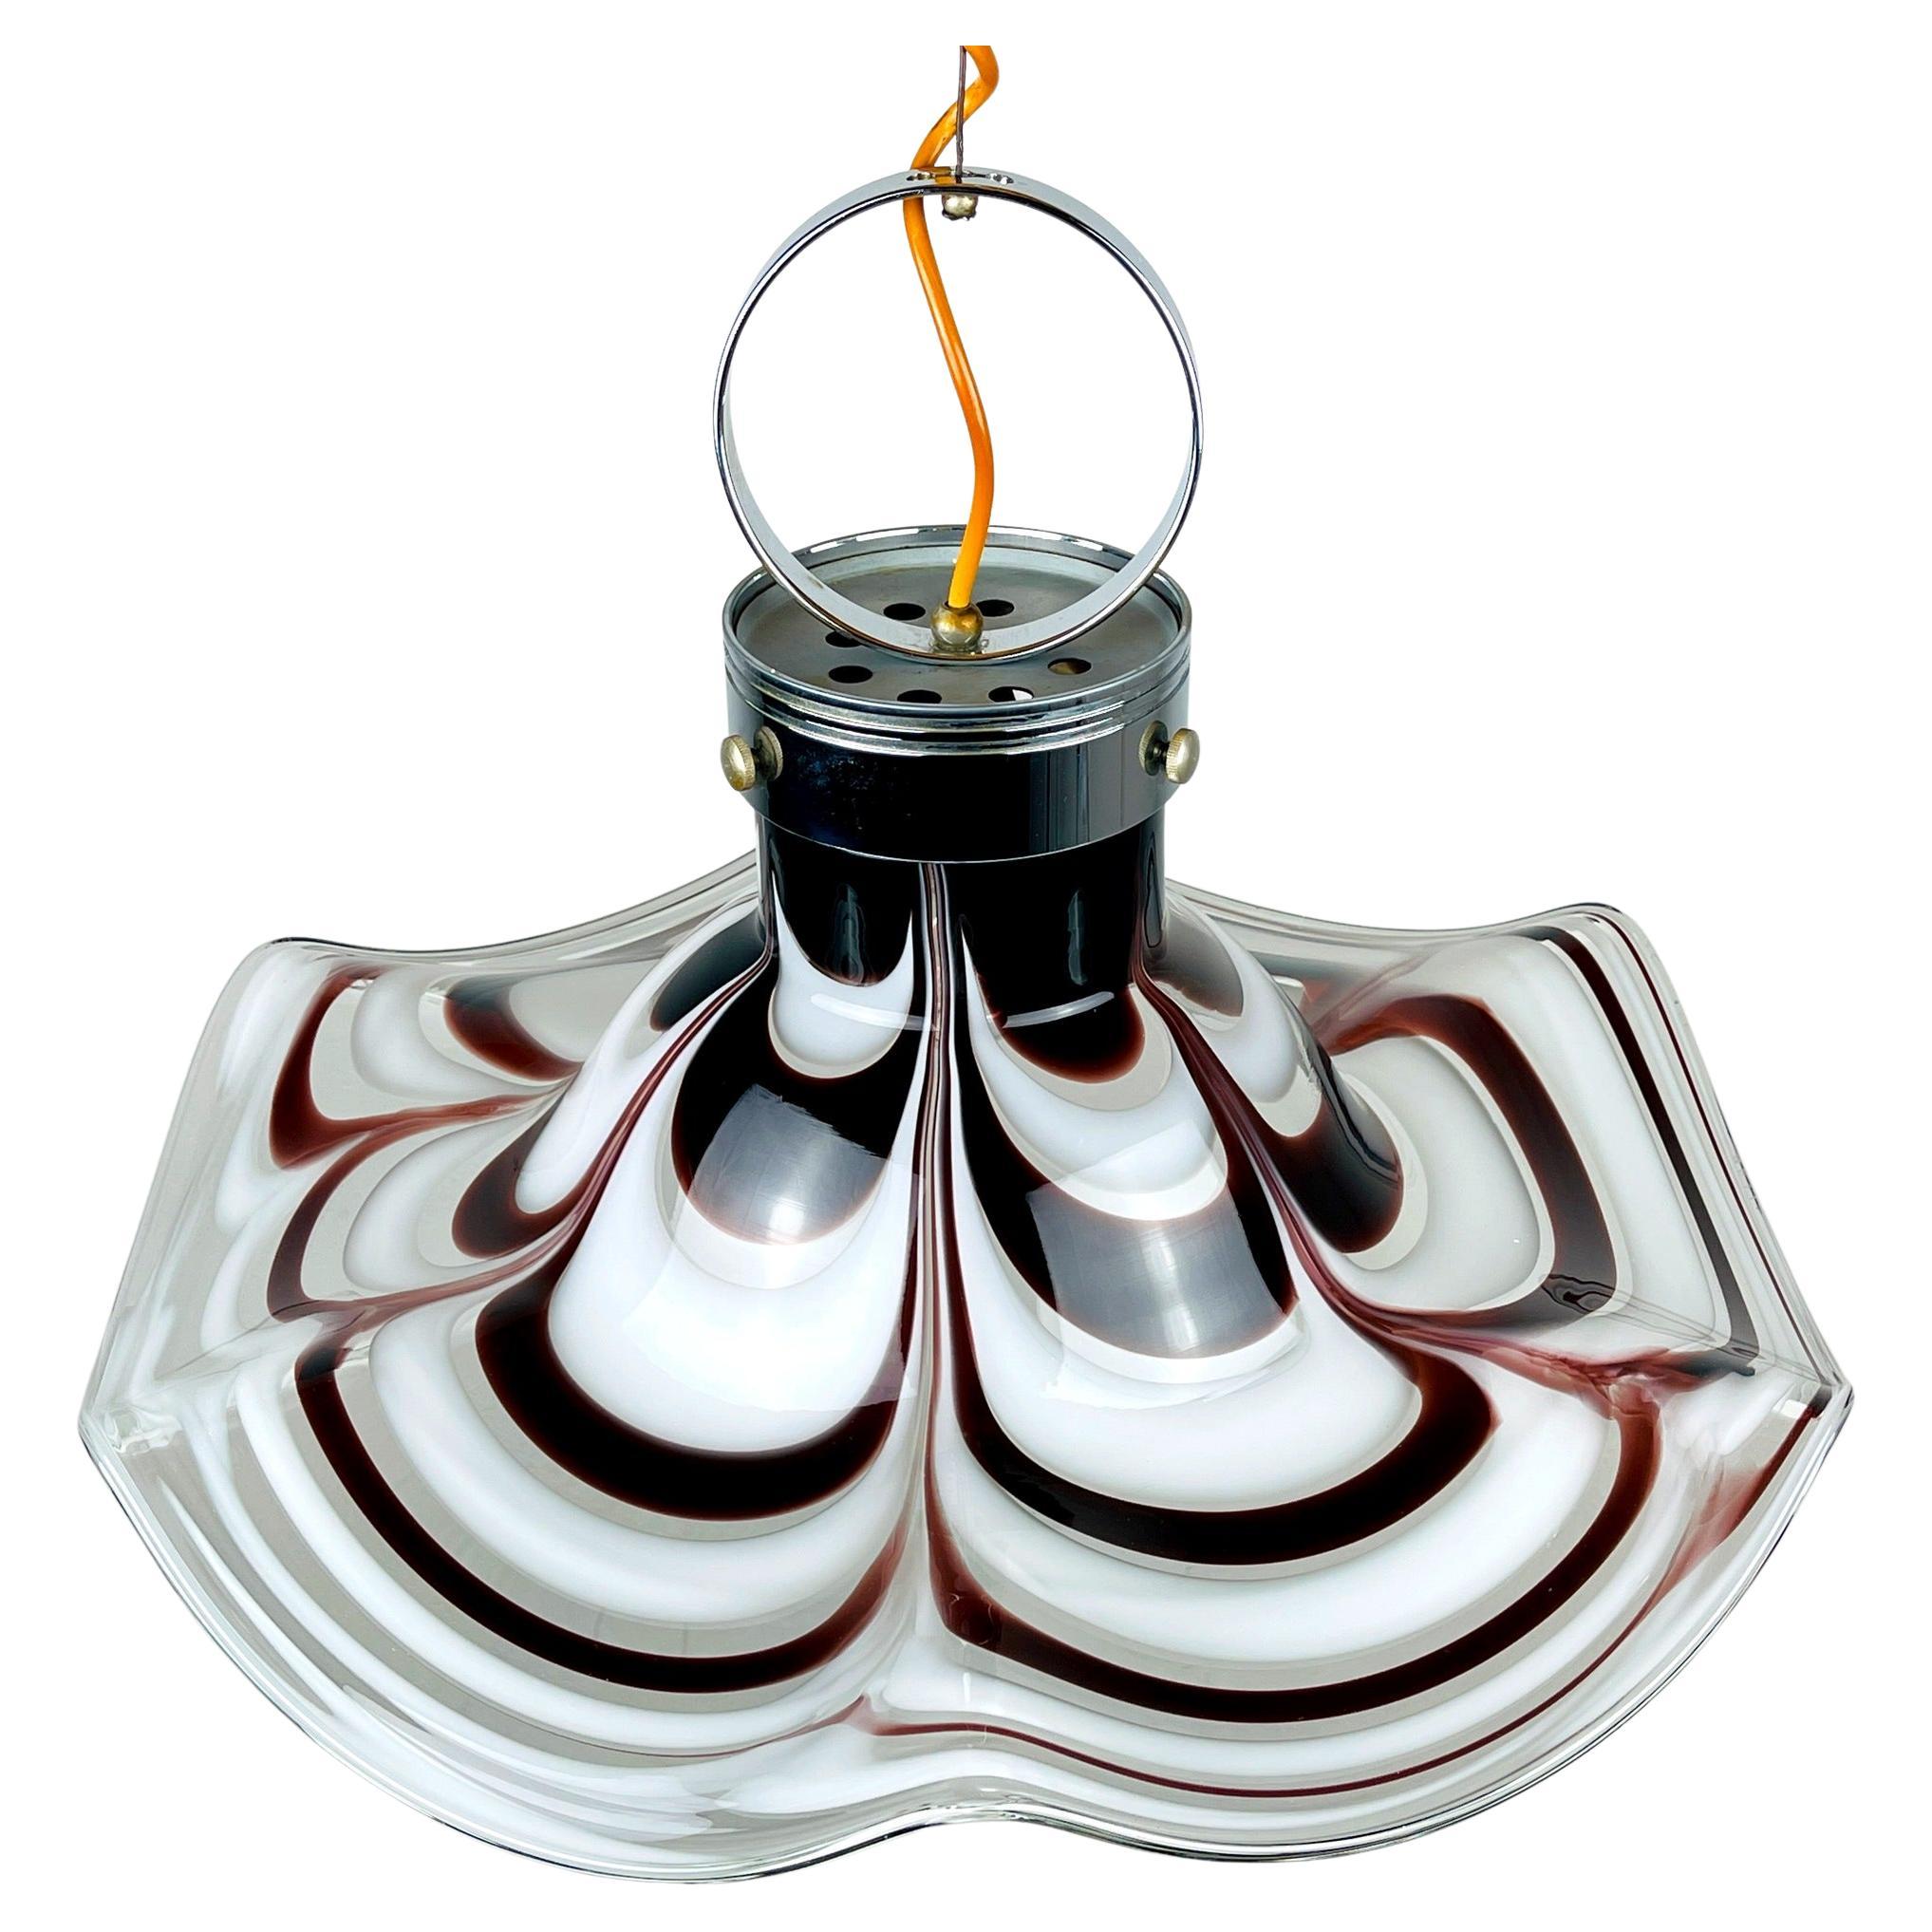 Original Murano Glass Brown Pendant Lamp Flower by AV Mazzega, Italy, 1970s